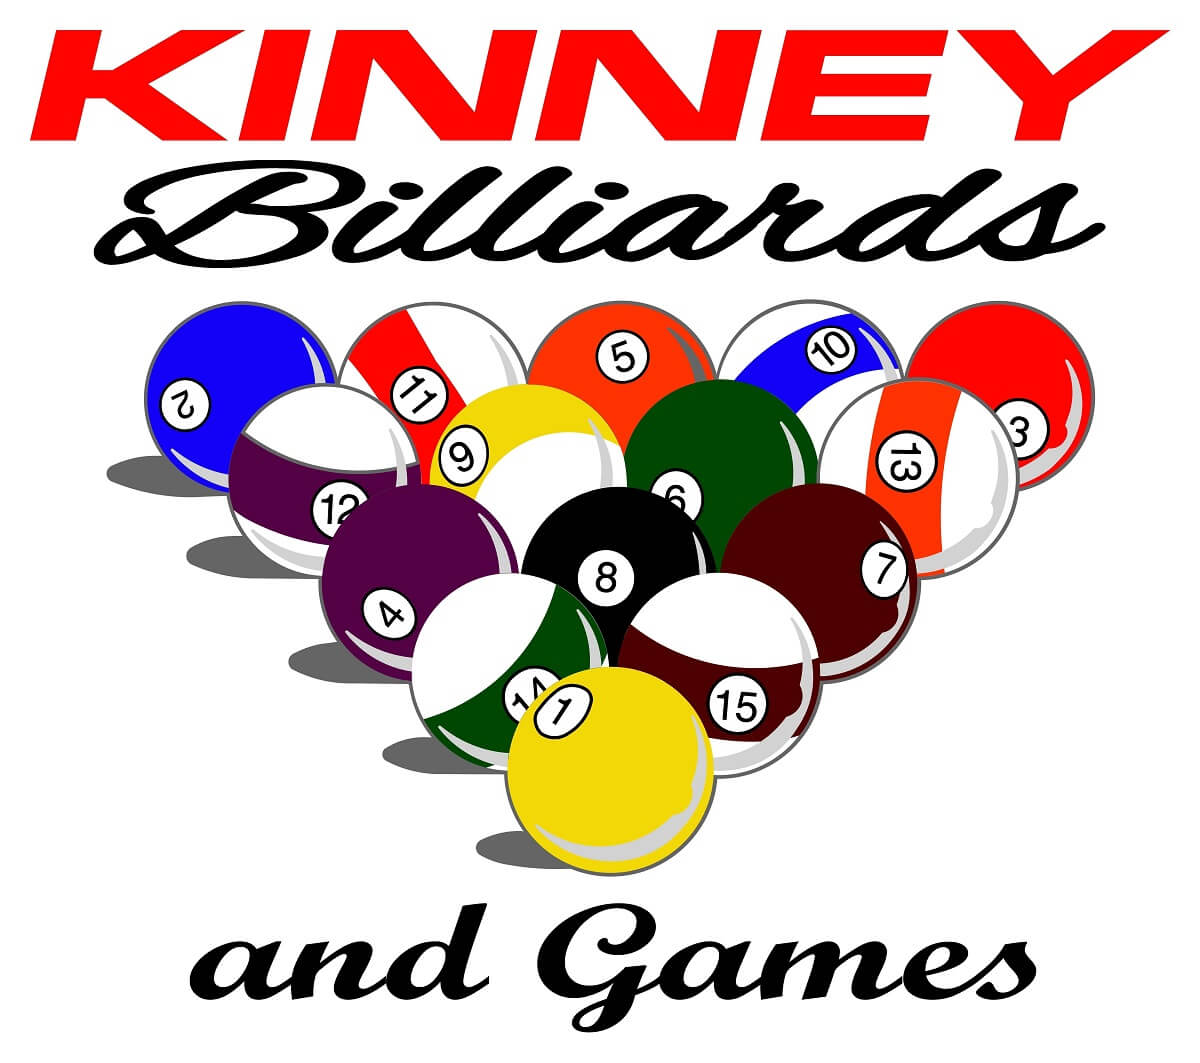 KinneyBilliardsandGames.jpg